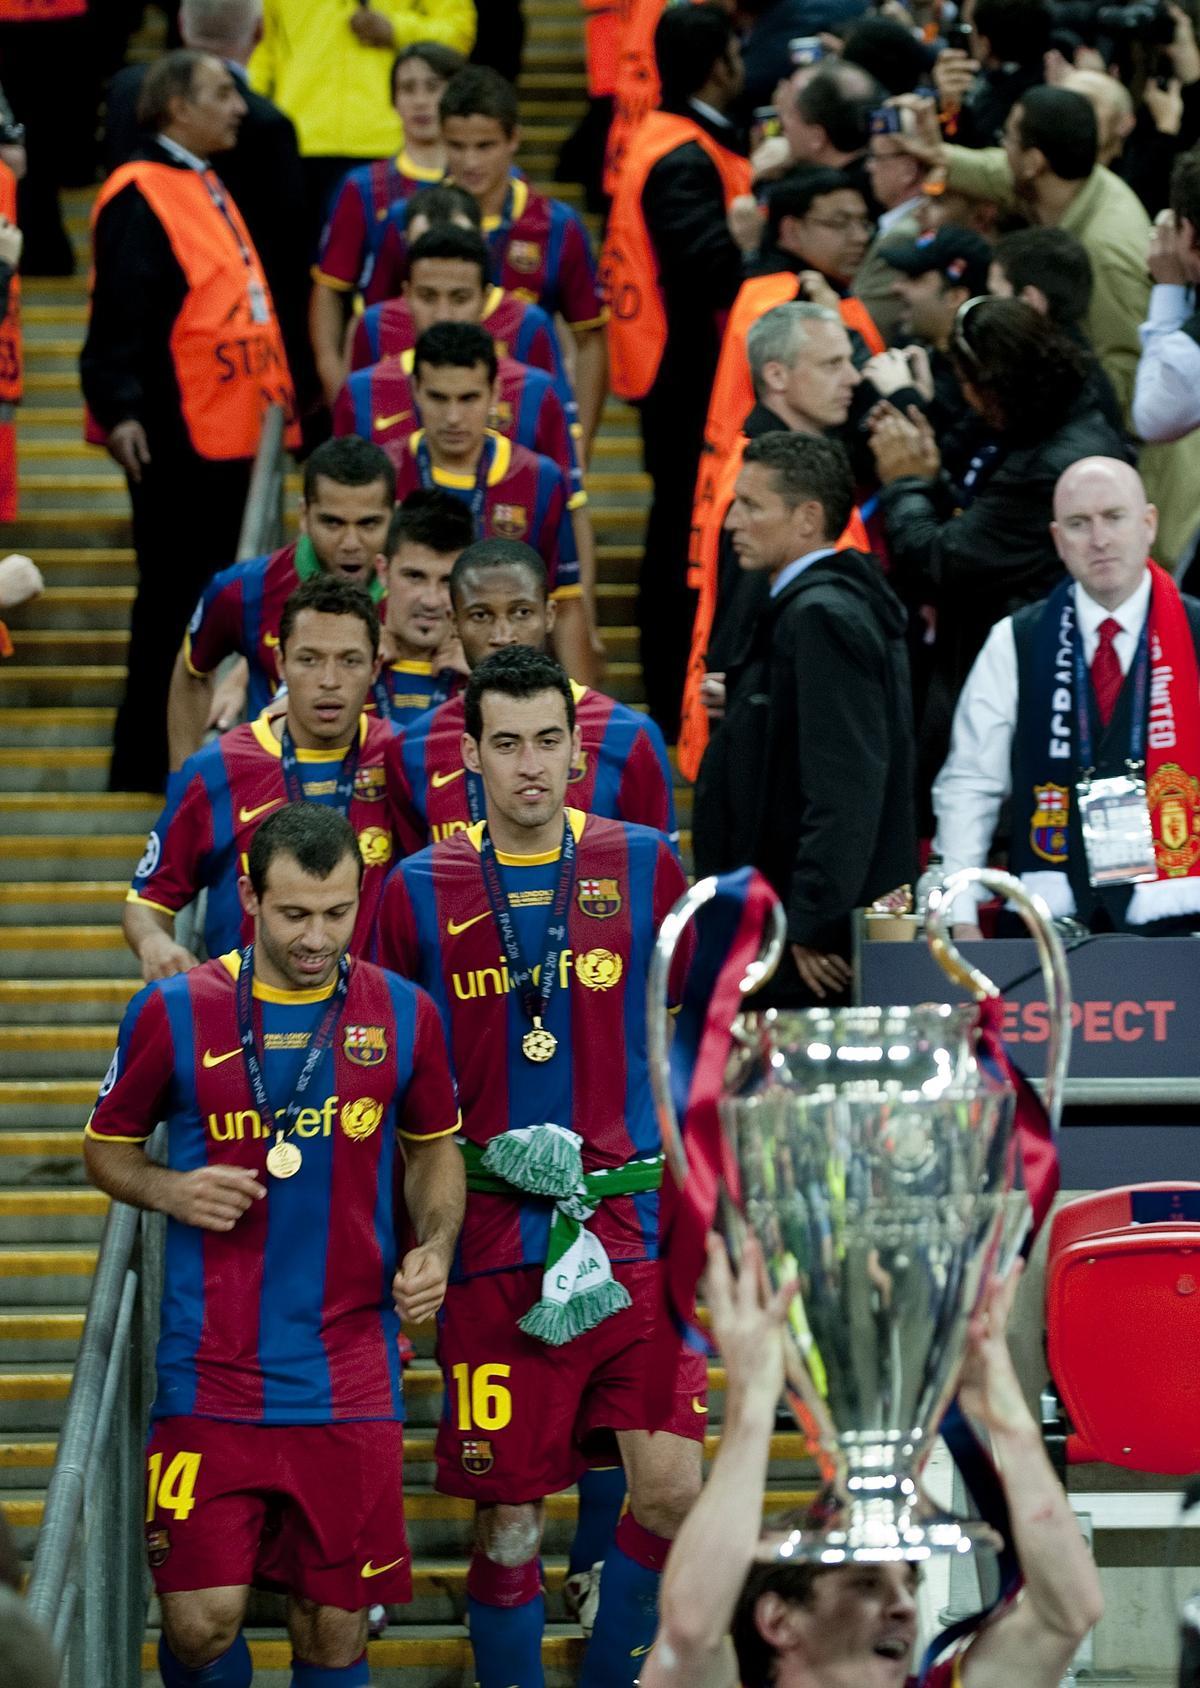 Busquets y resto del equipo azulgrana detrás de la ’orejona’ en manos de Messi tras la final contra el Manchester United en el estadio de Wembley, en mayo de 2011